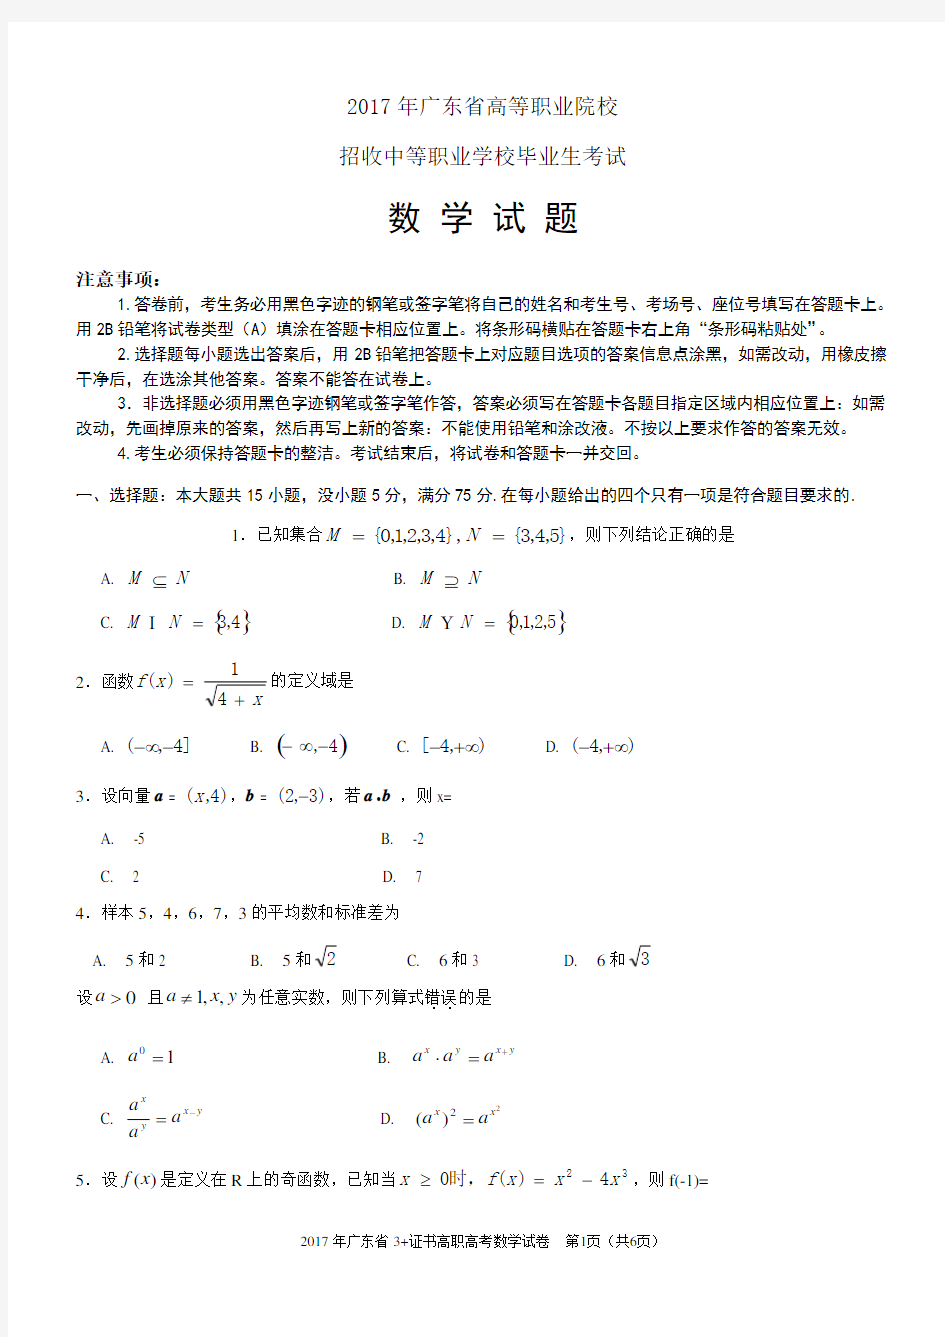 (完整版)数学真题2017年广东省3证书高职高考数学试卷及参考答案